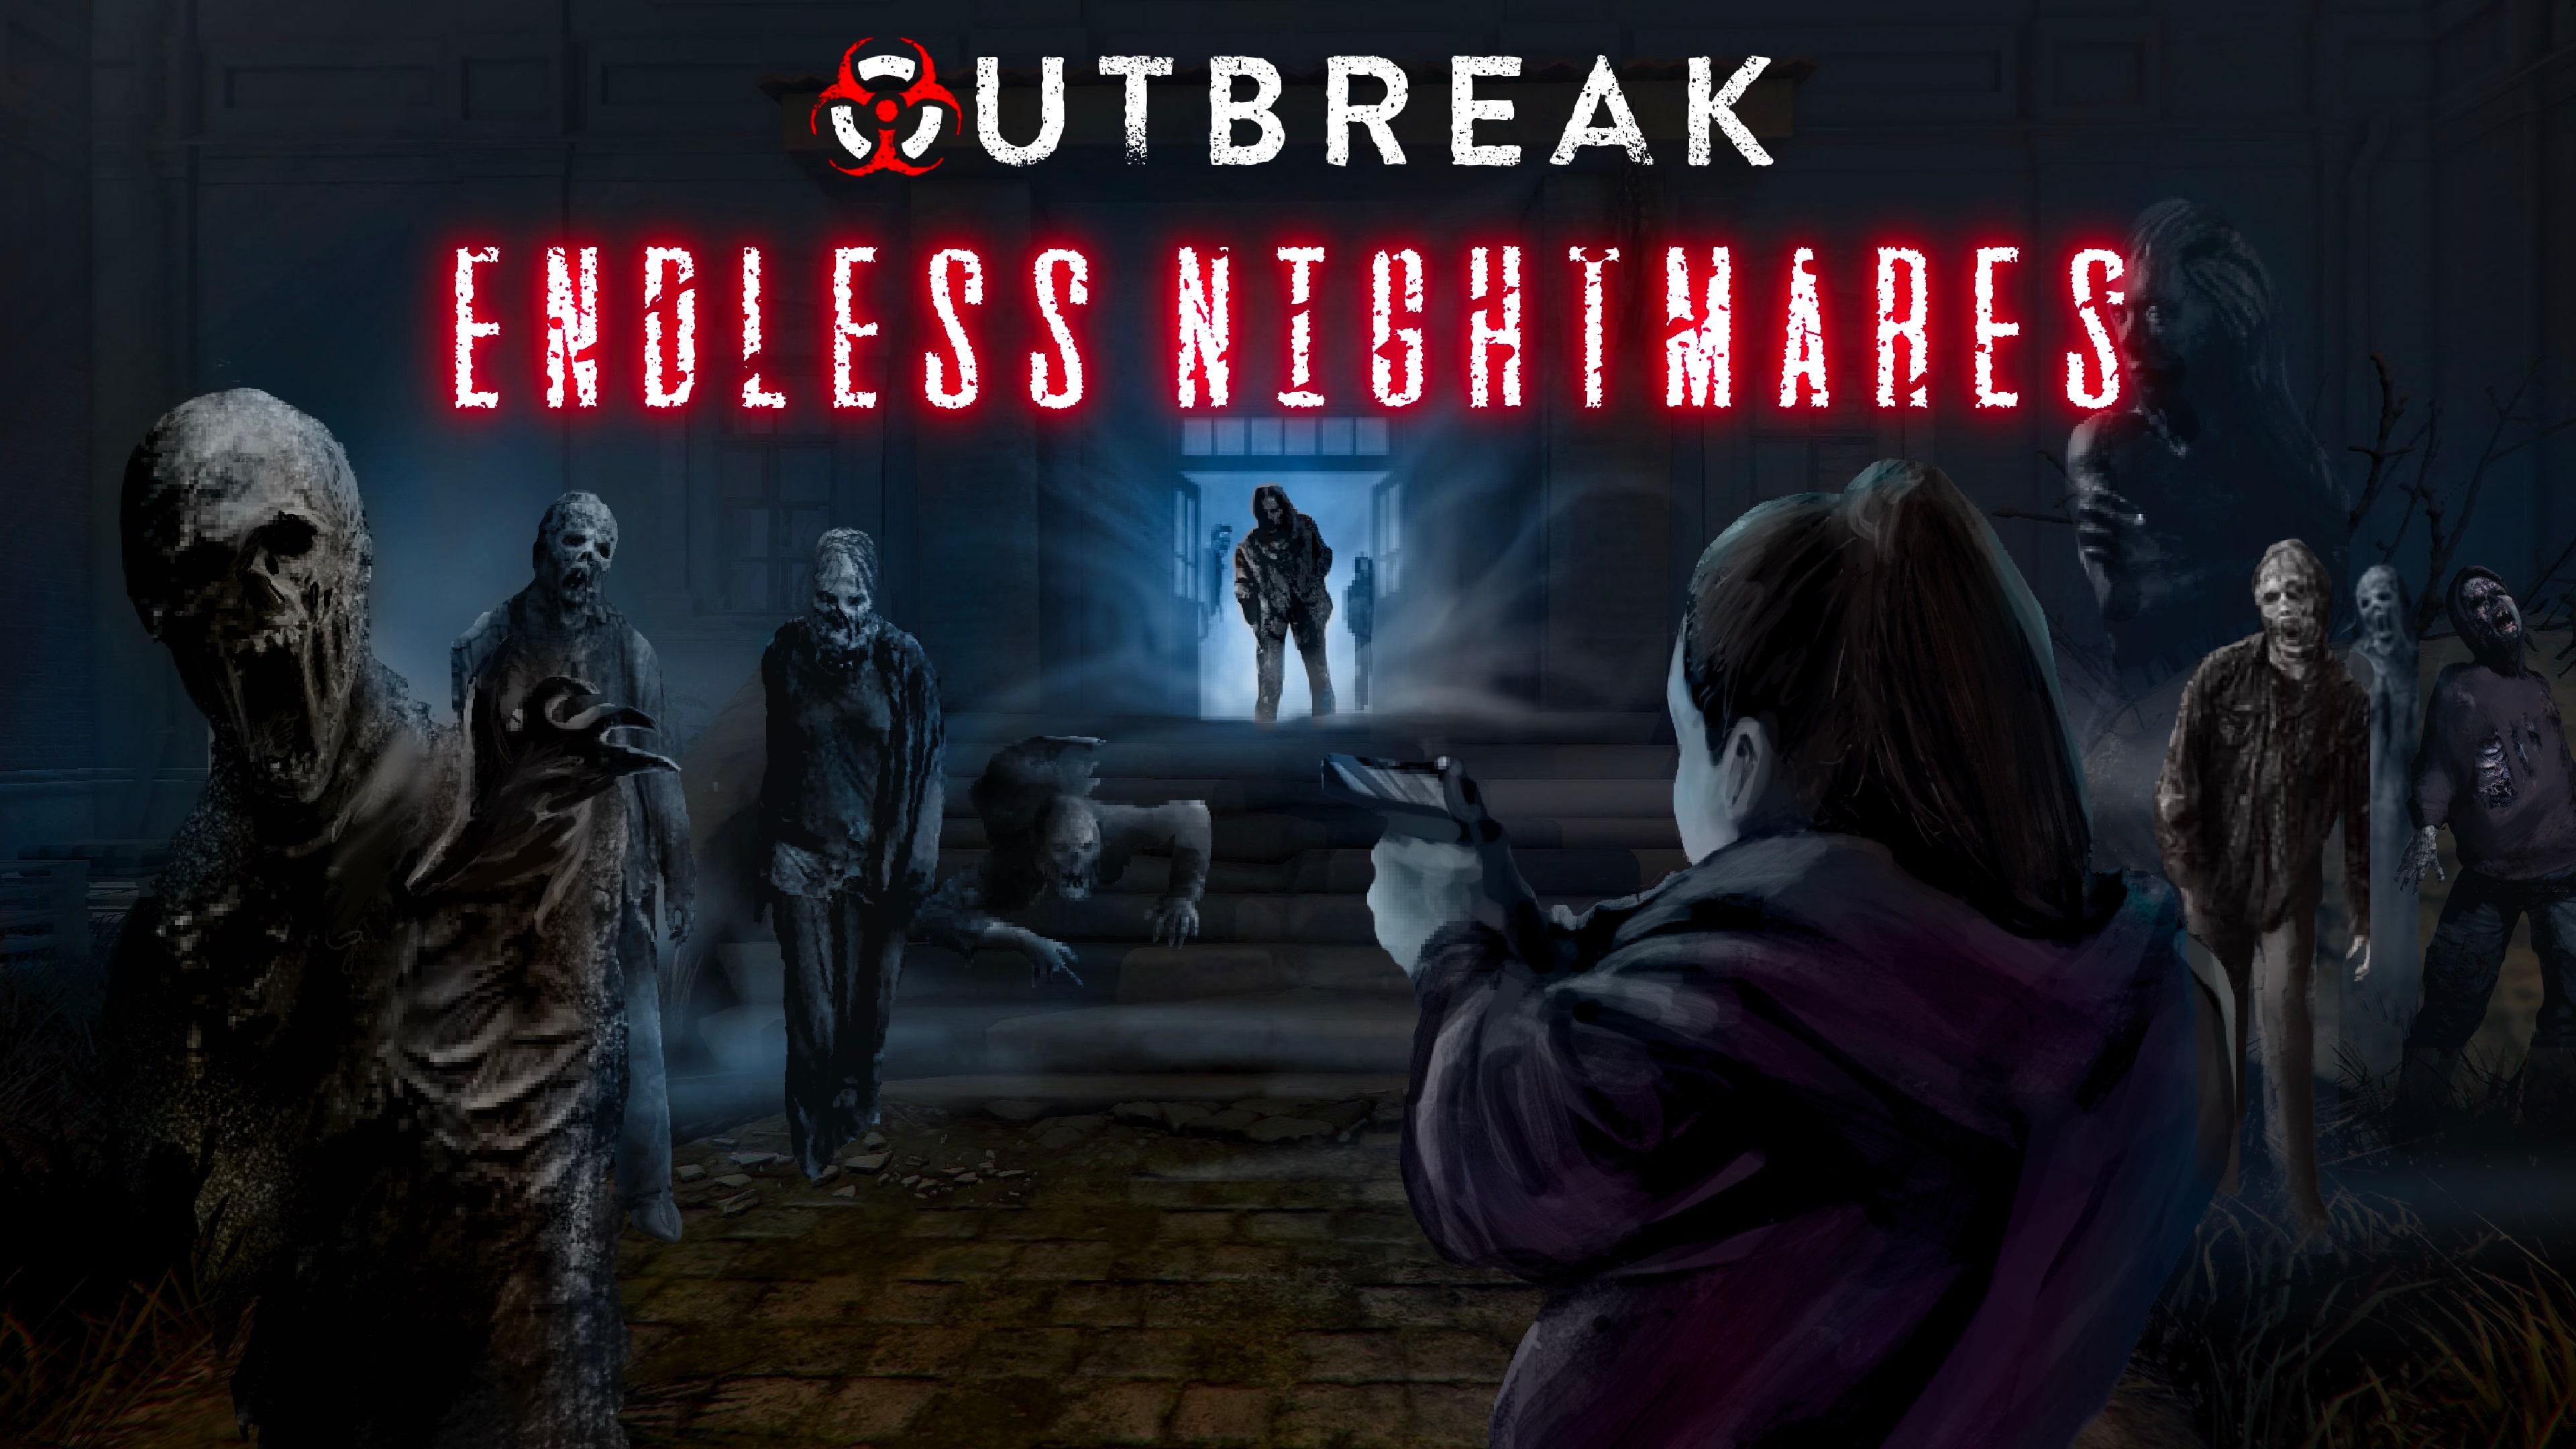 Outbreak: Endless Nightmares